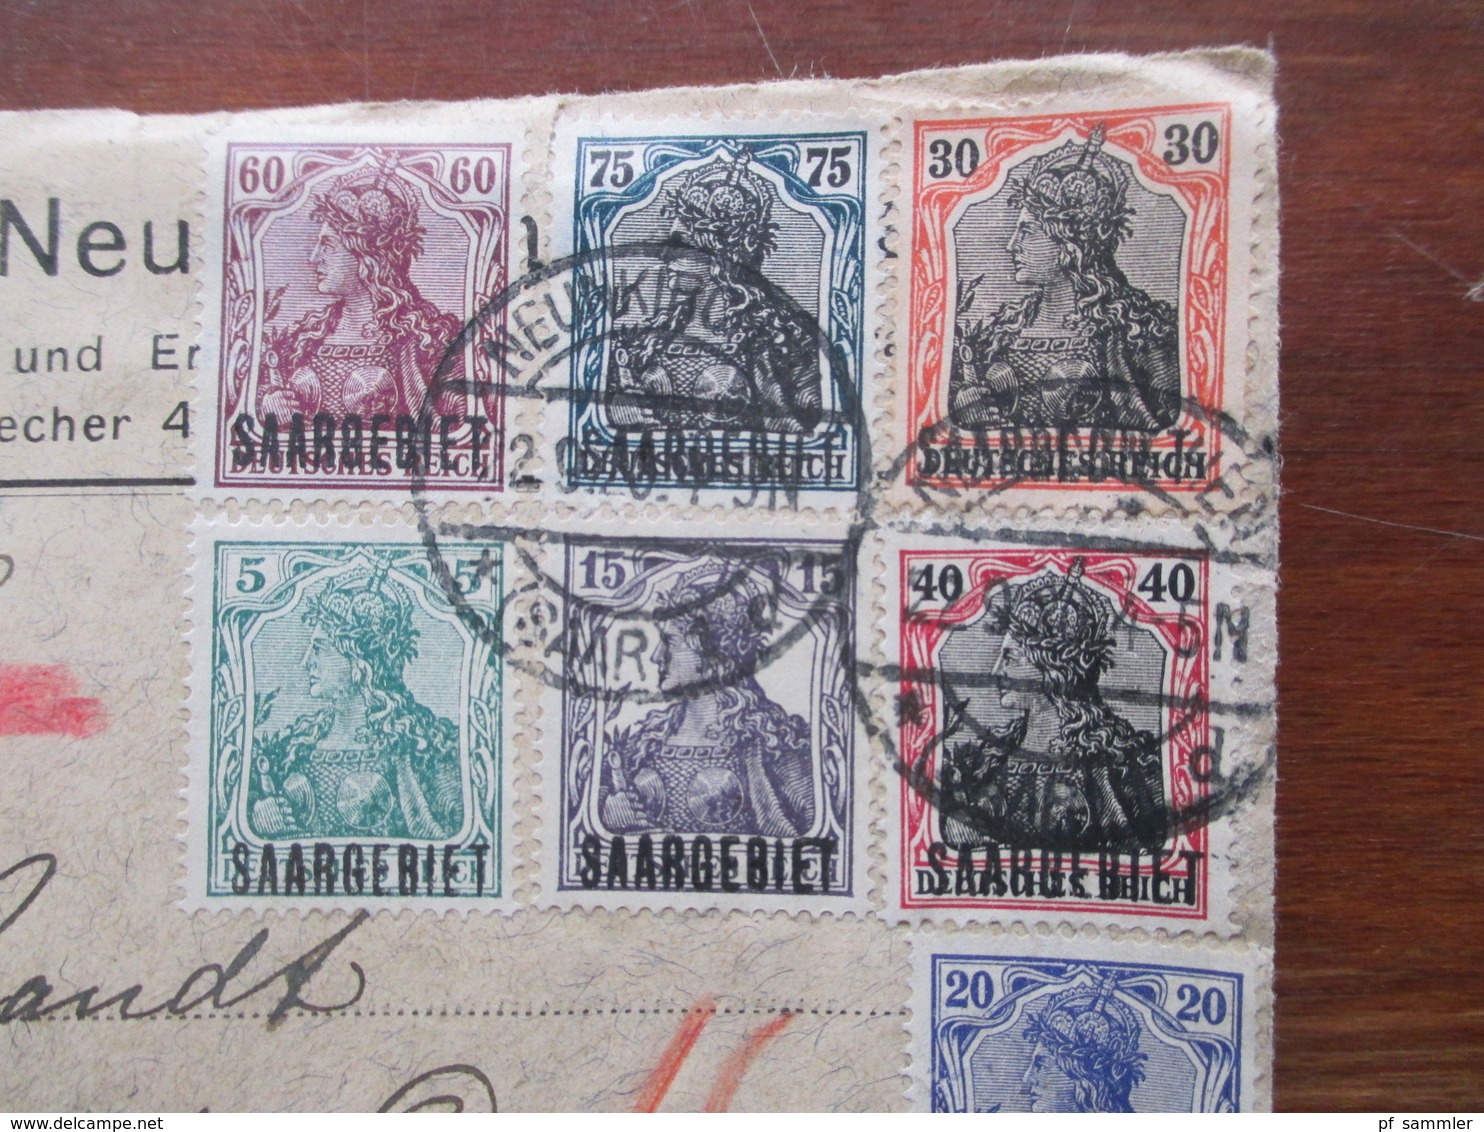 Saargebiet 1920 3 Brief Vorderseiten mit verschiedenen Marken u.a. Nr. 9 Aufdrucktype III und Aufdruckabarten ?!?